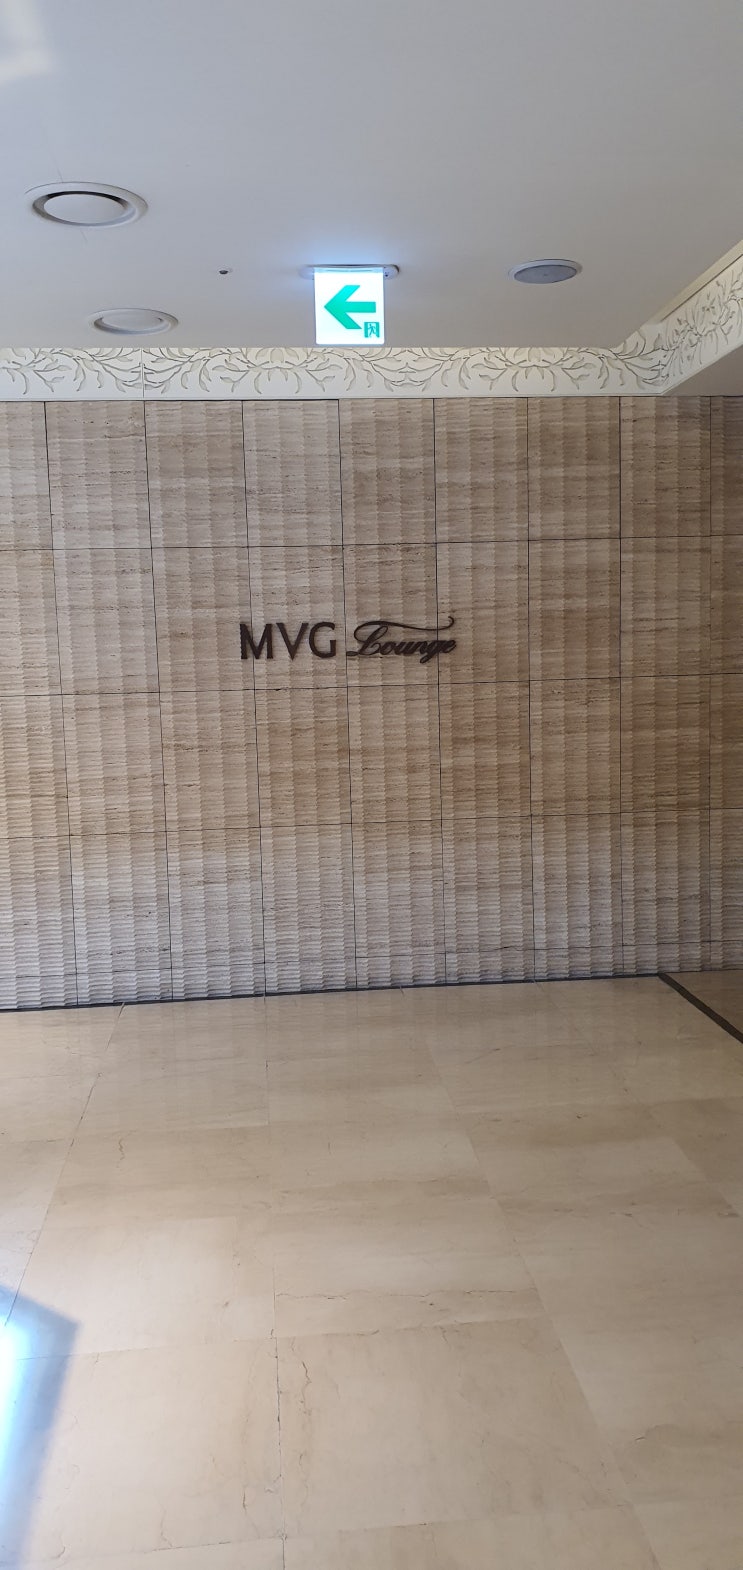 롯데백화점 본점 MVG 라운지 방문 해봤습니다 탐방